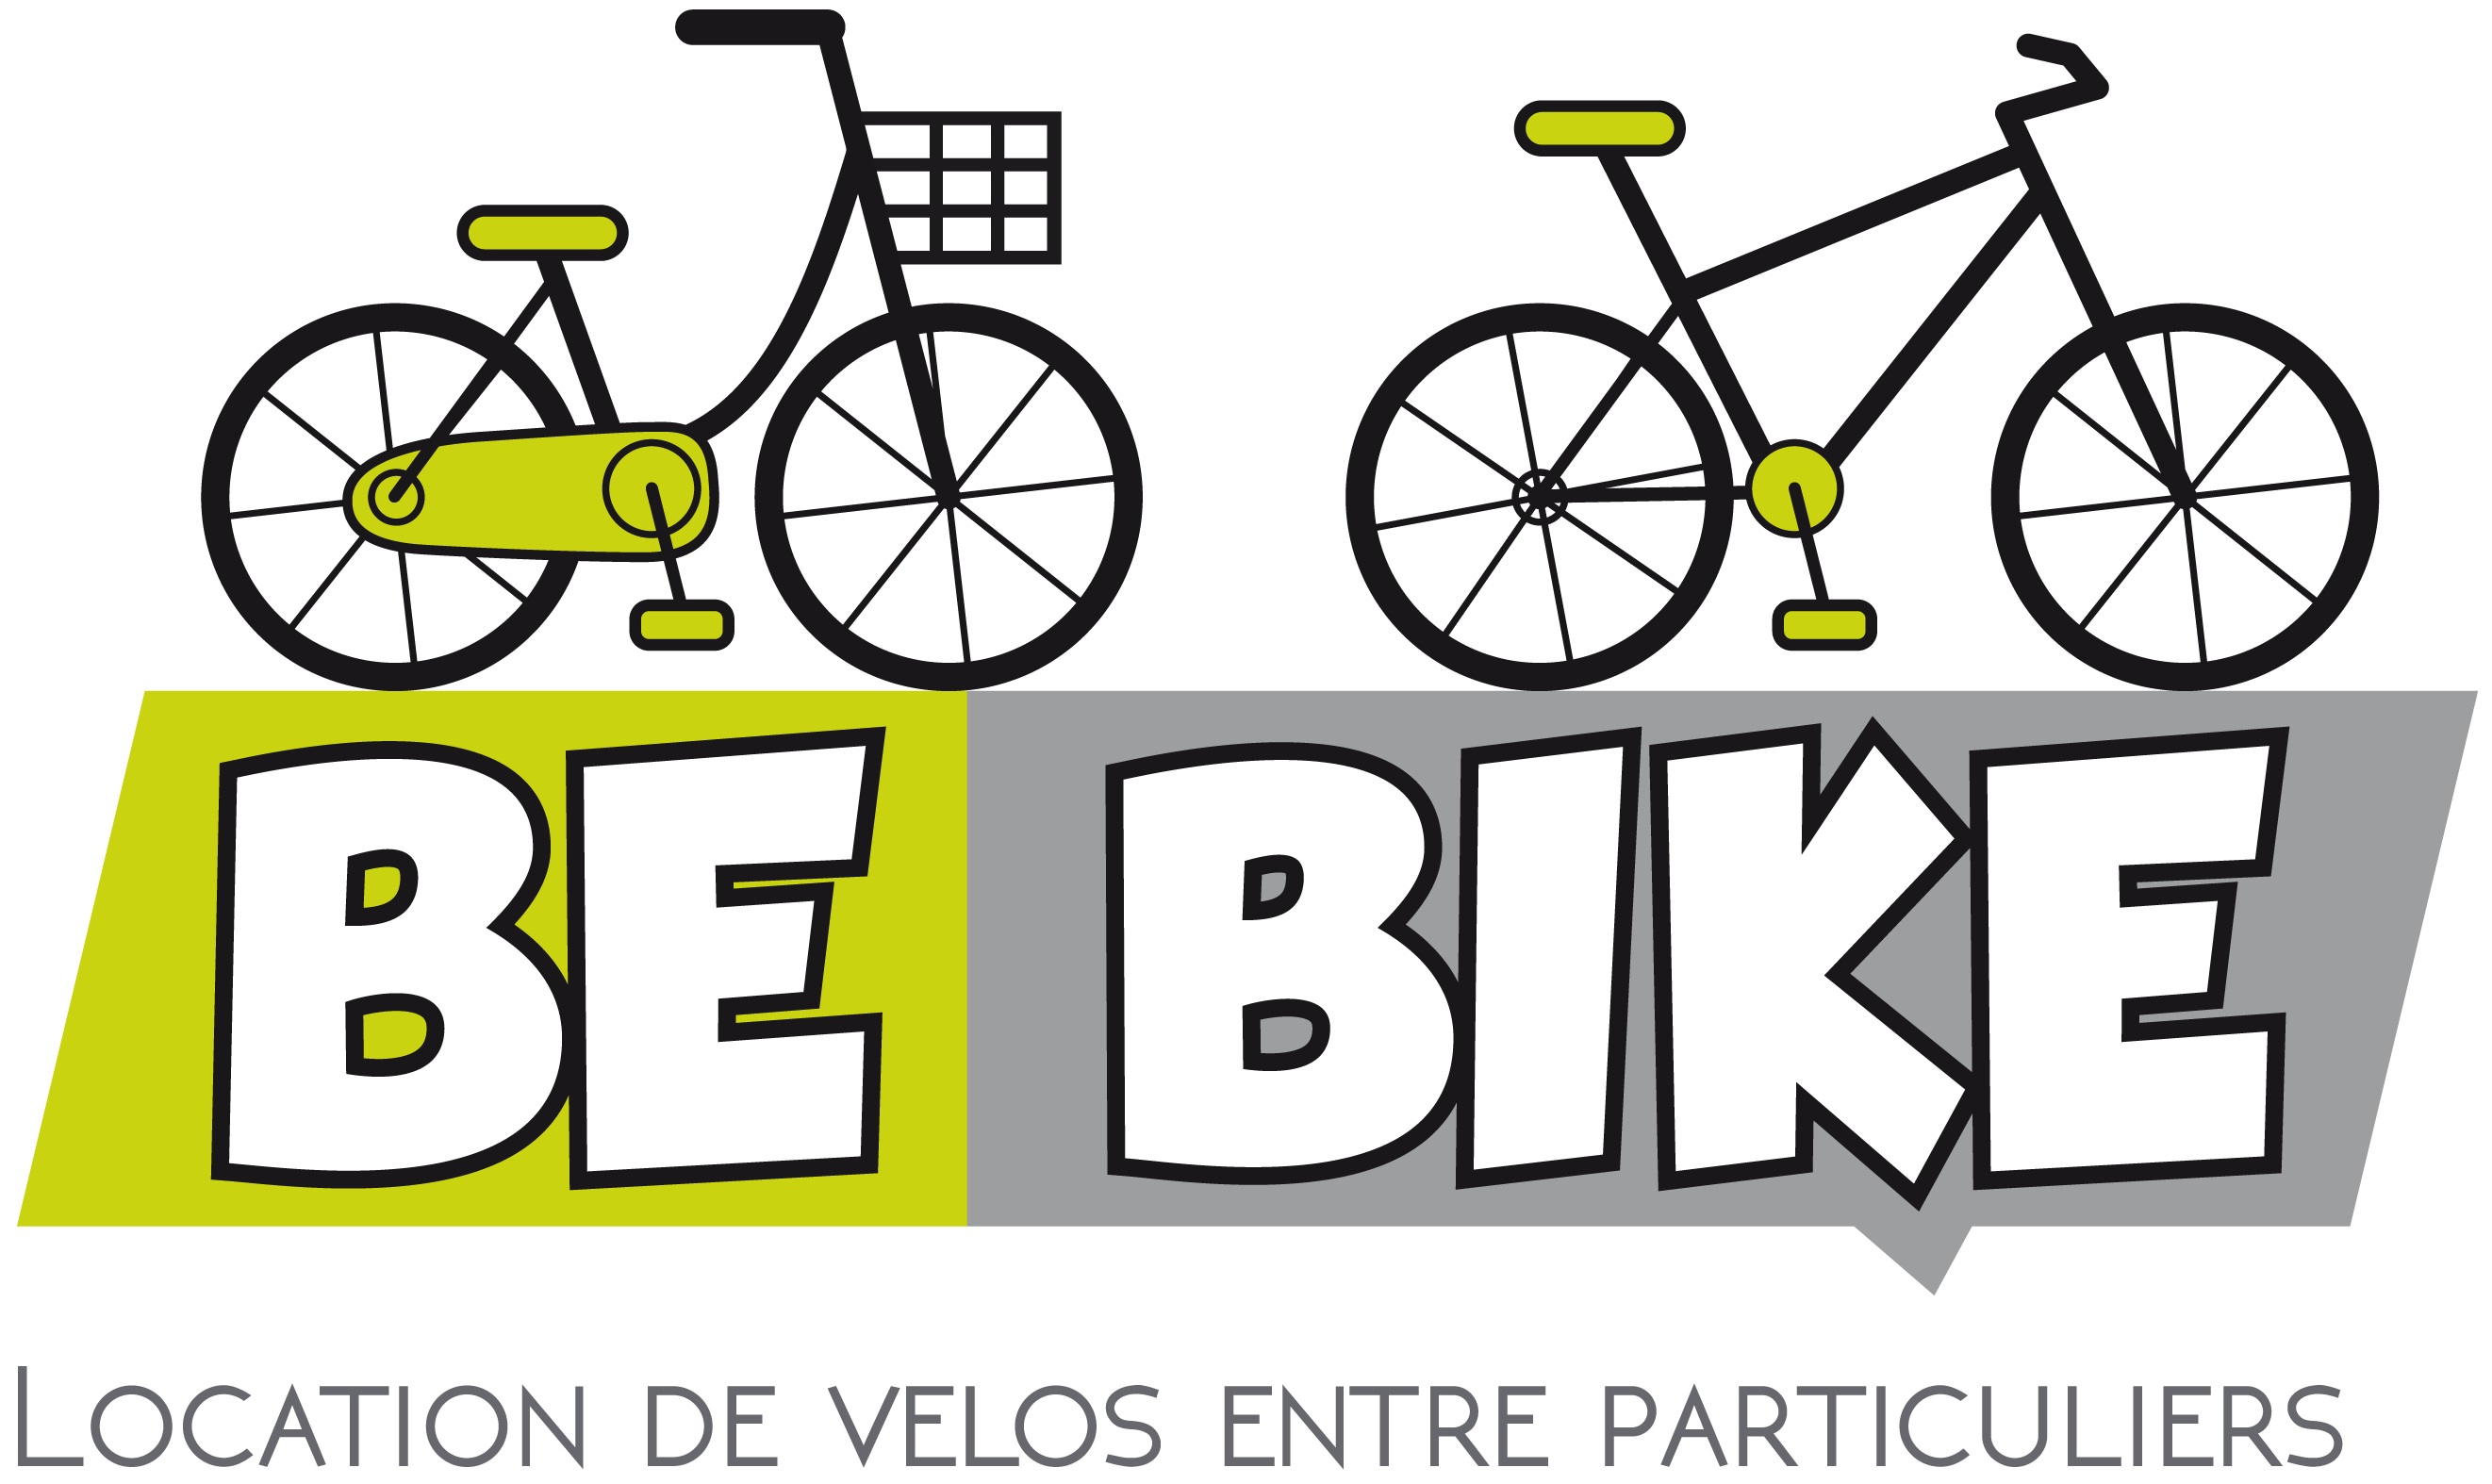 Be bike